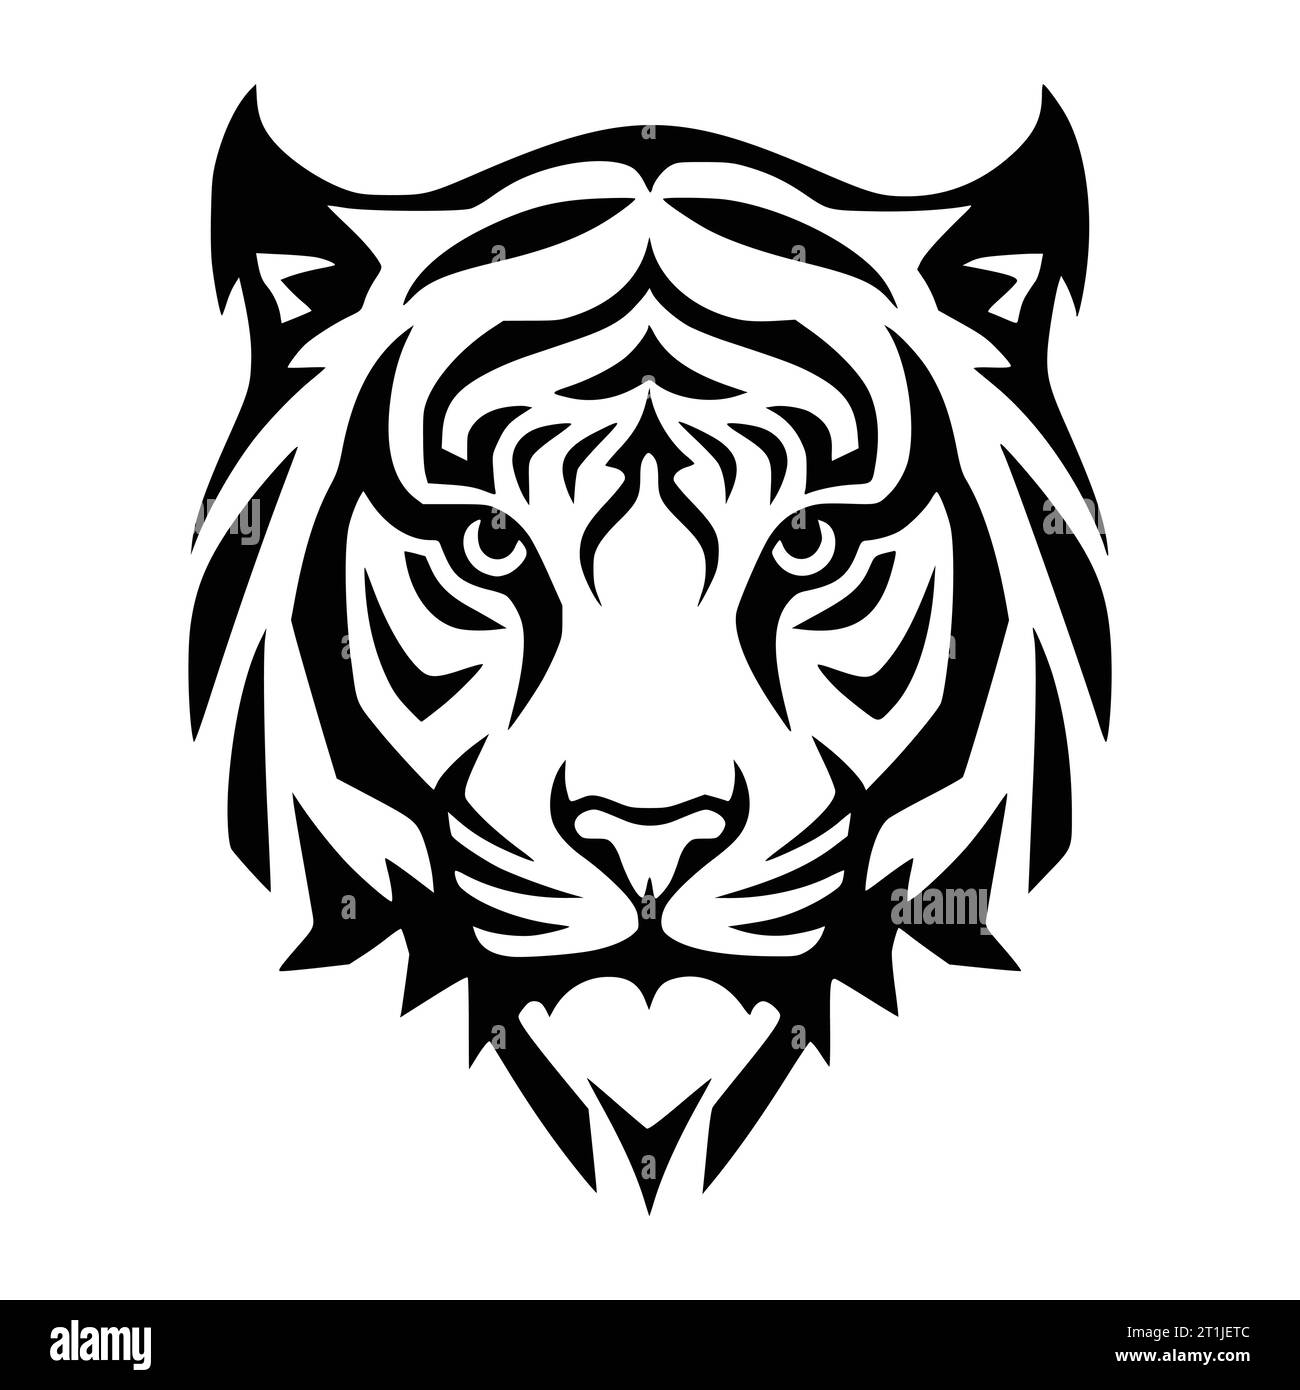 tiger wild mammal animal head logo and symbol illustration Stock Vector